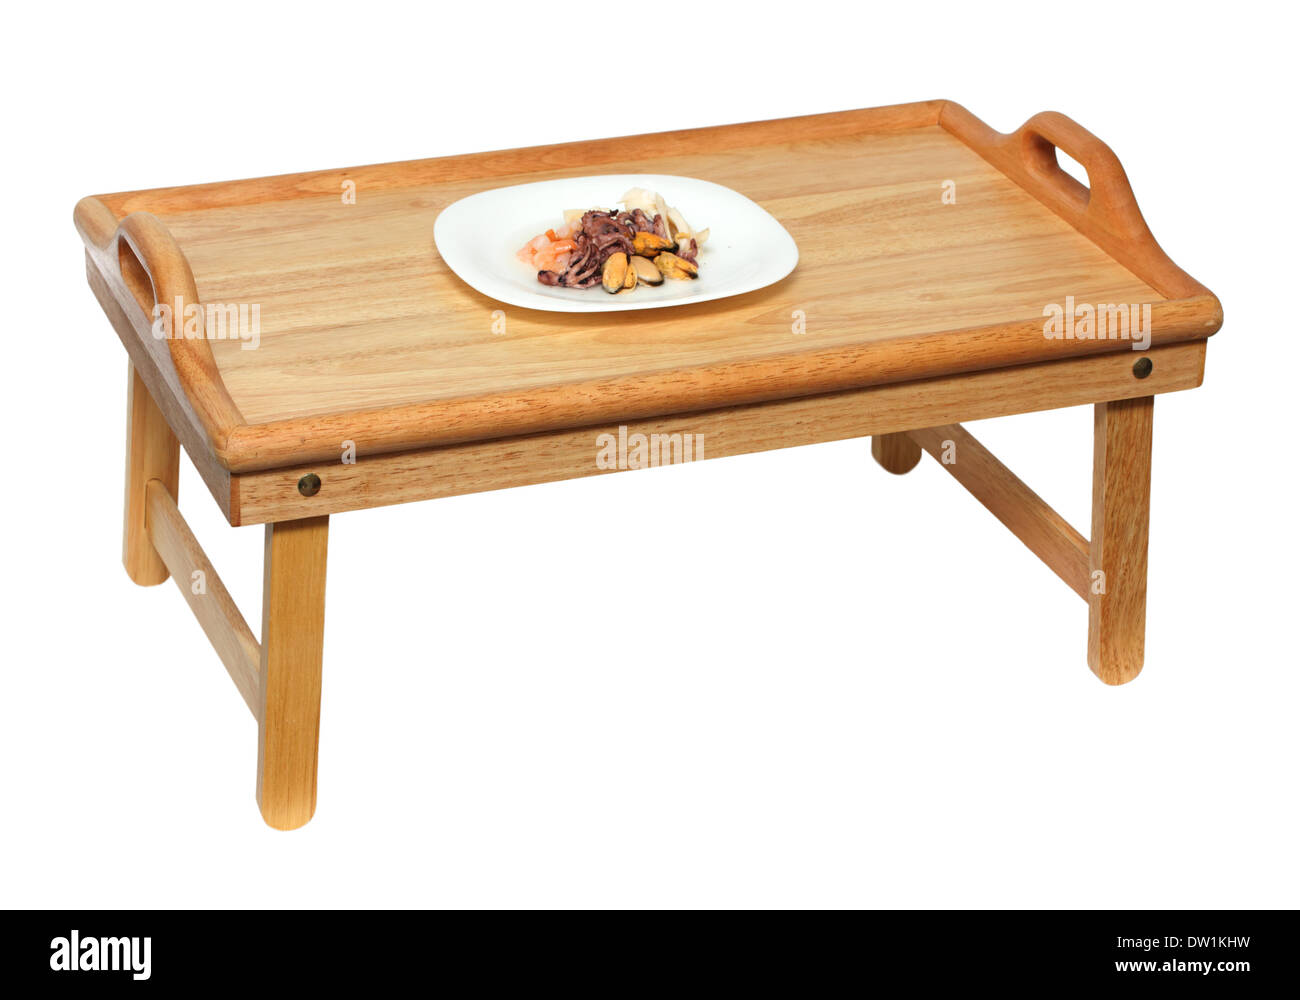 Platte mit Meeresfrüchten auf Holztisch Stockfoto